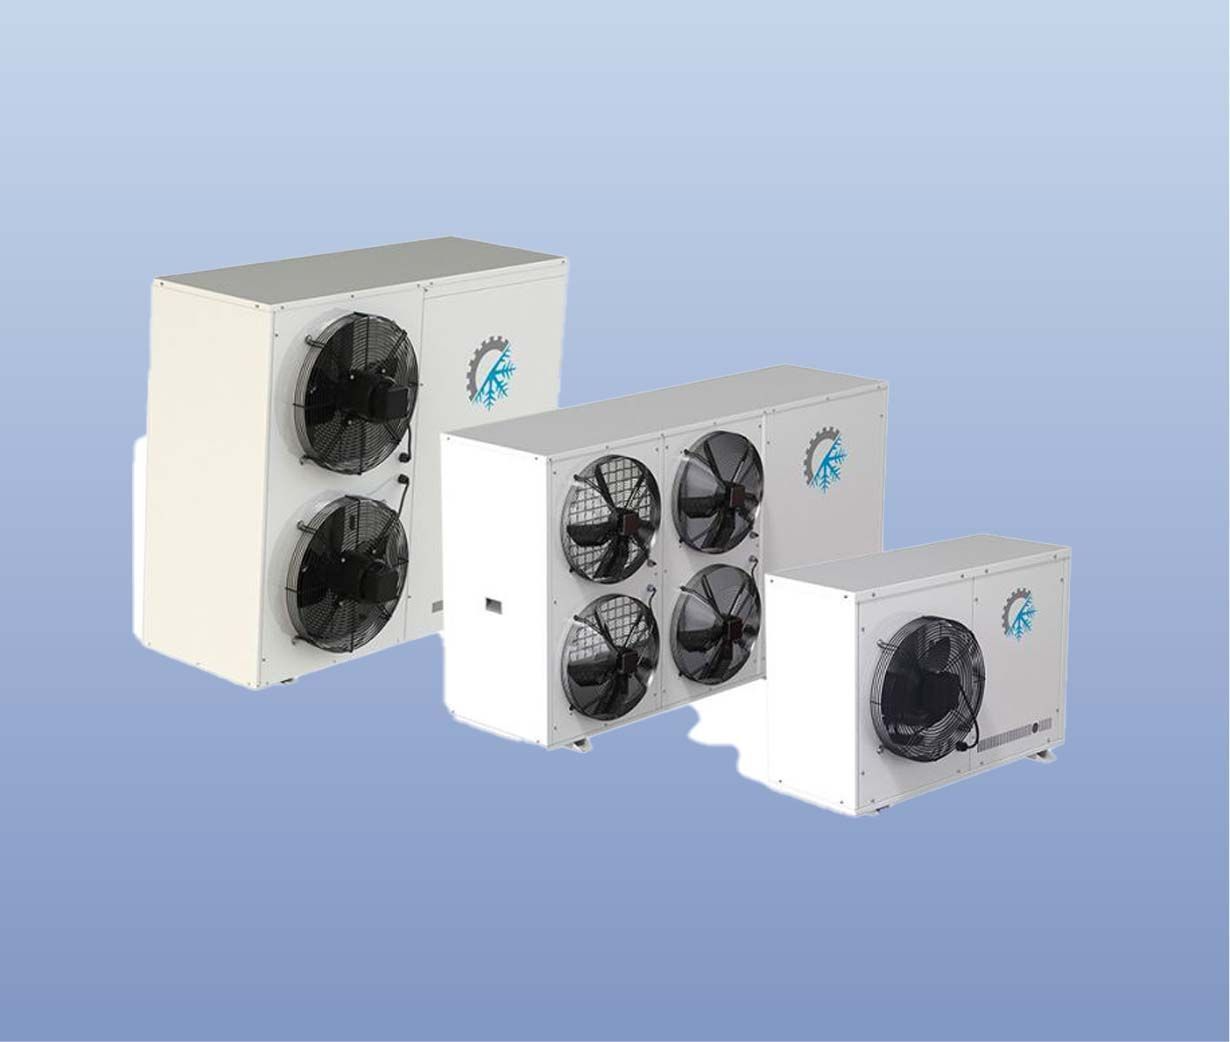 Debaf - Korkmaz Split Cooling Devices